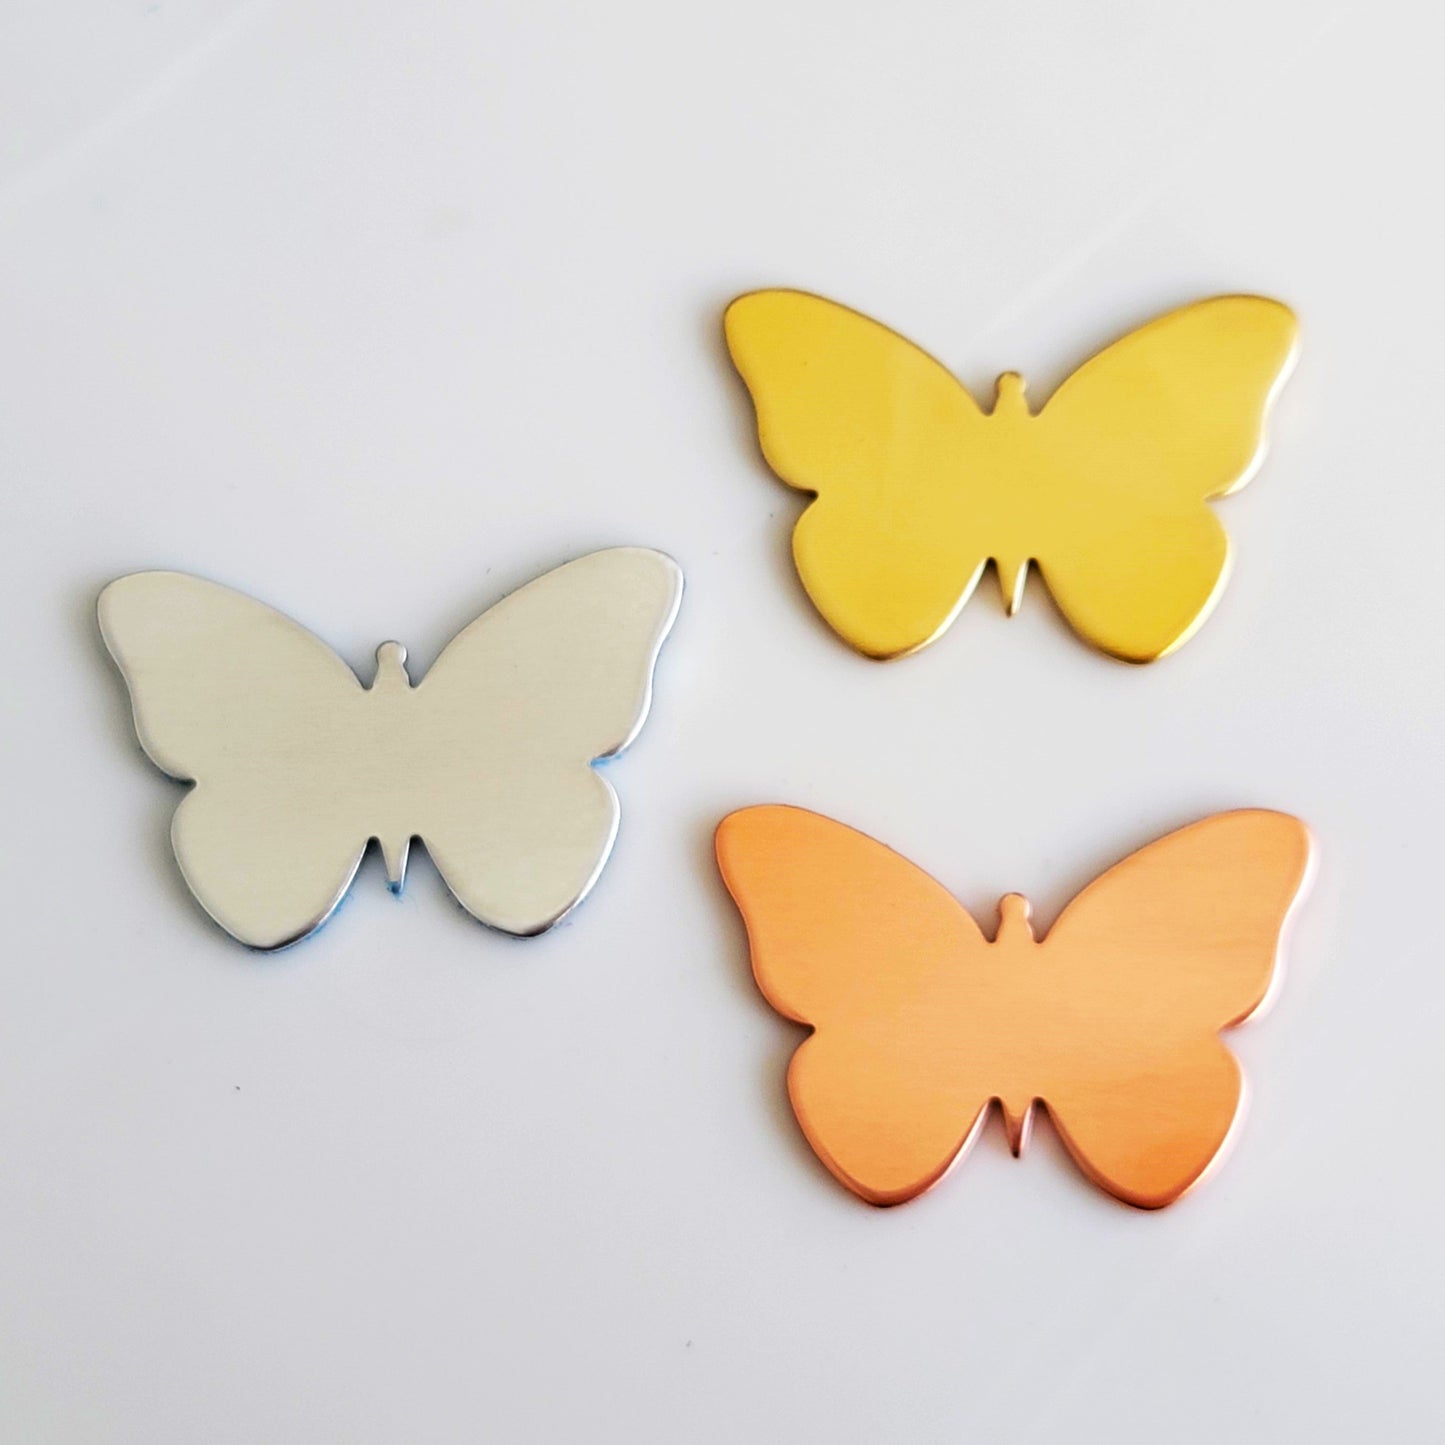 1" x 1 1/2" Butterfly - 14g ALUMINUM